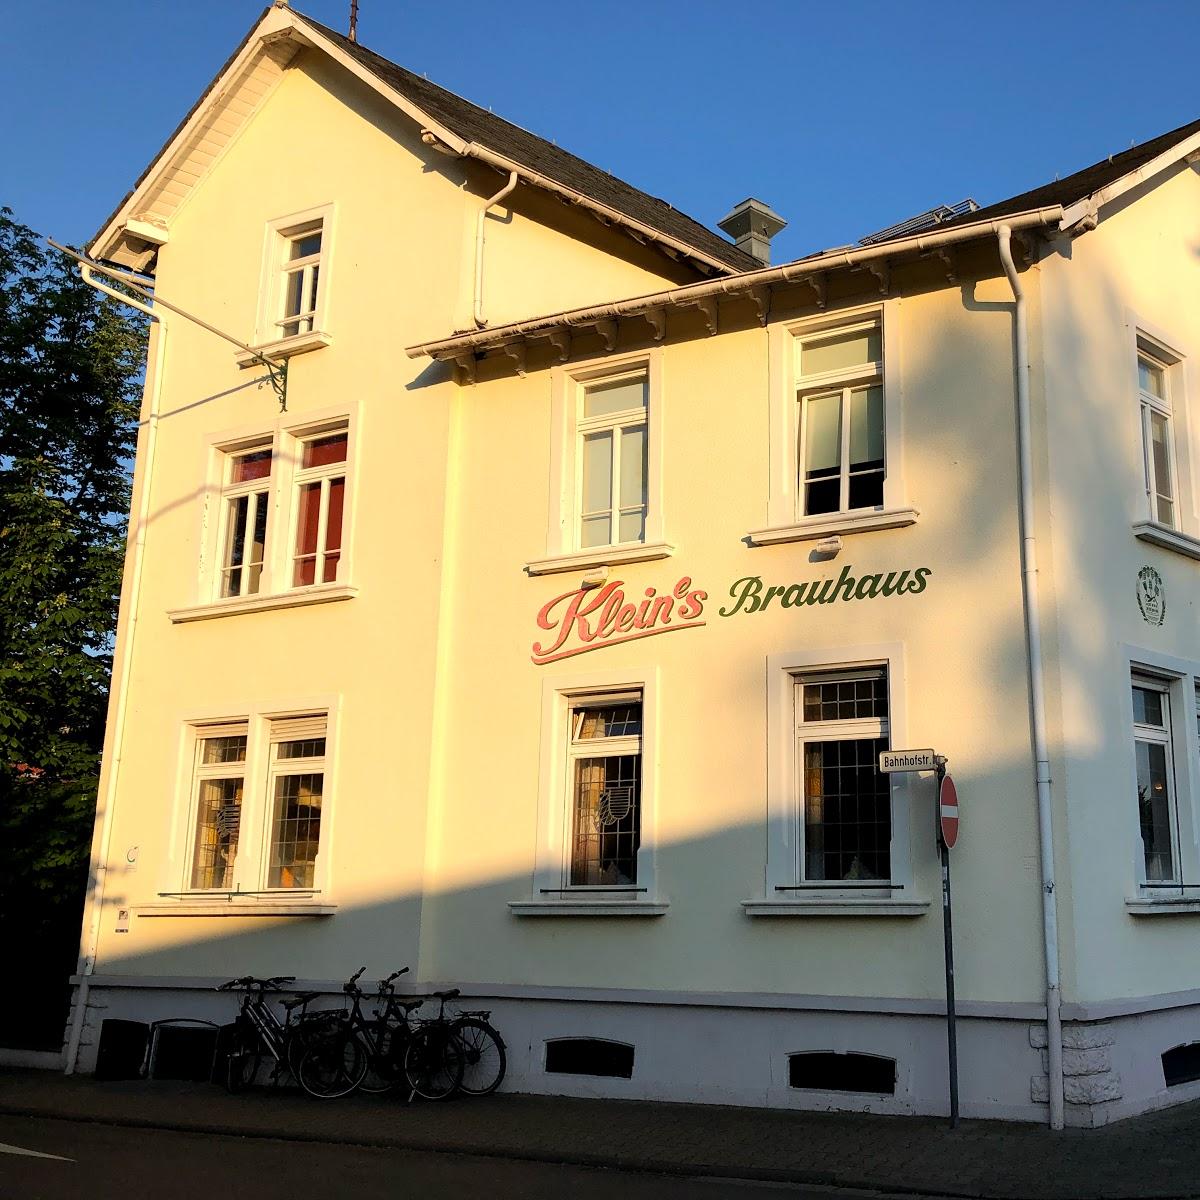 Restaurant "Seligenstädter Klein-Brauerei GmbH & Co KG Objekt Zum Riesen" in  Seligenstadt